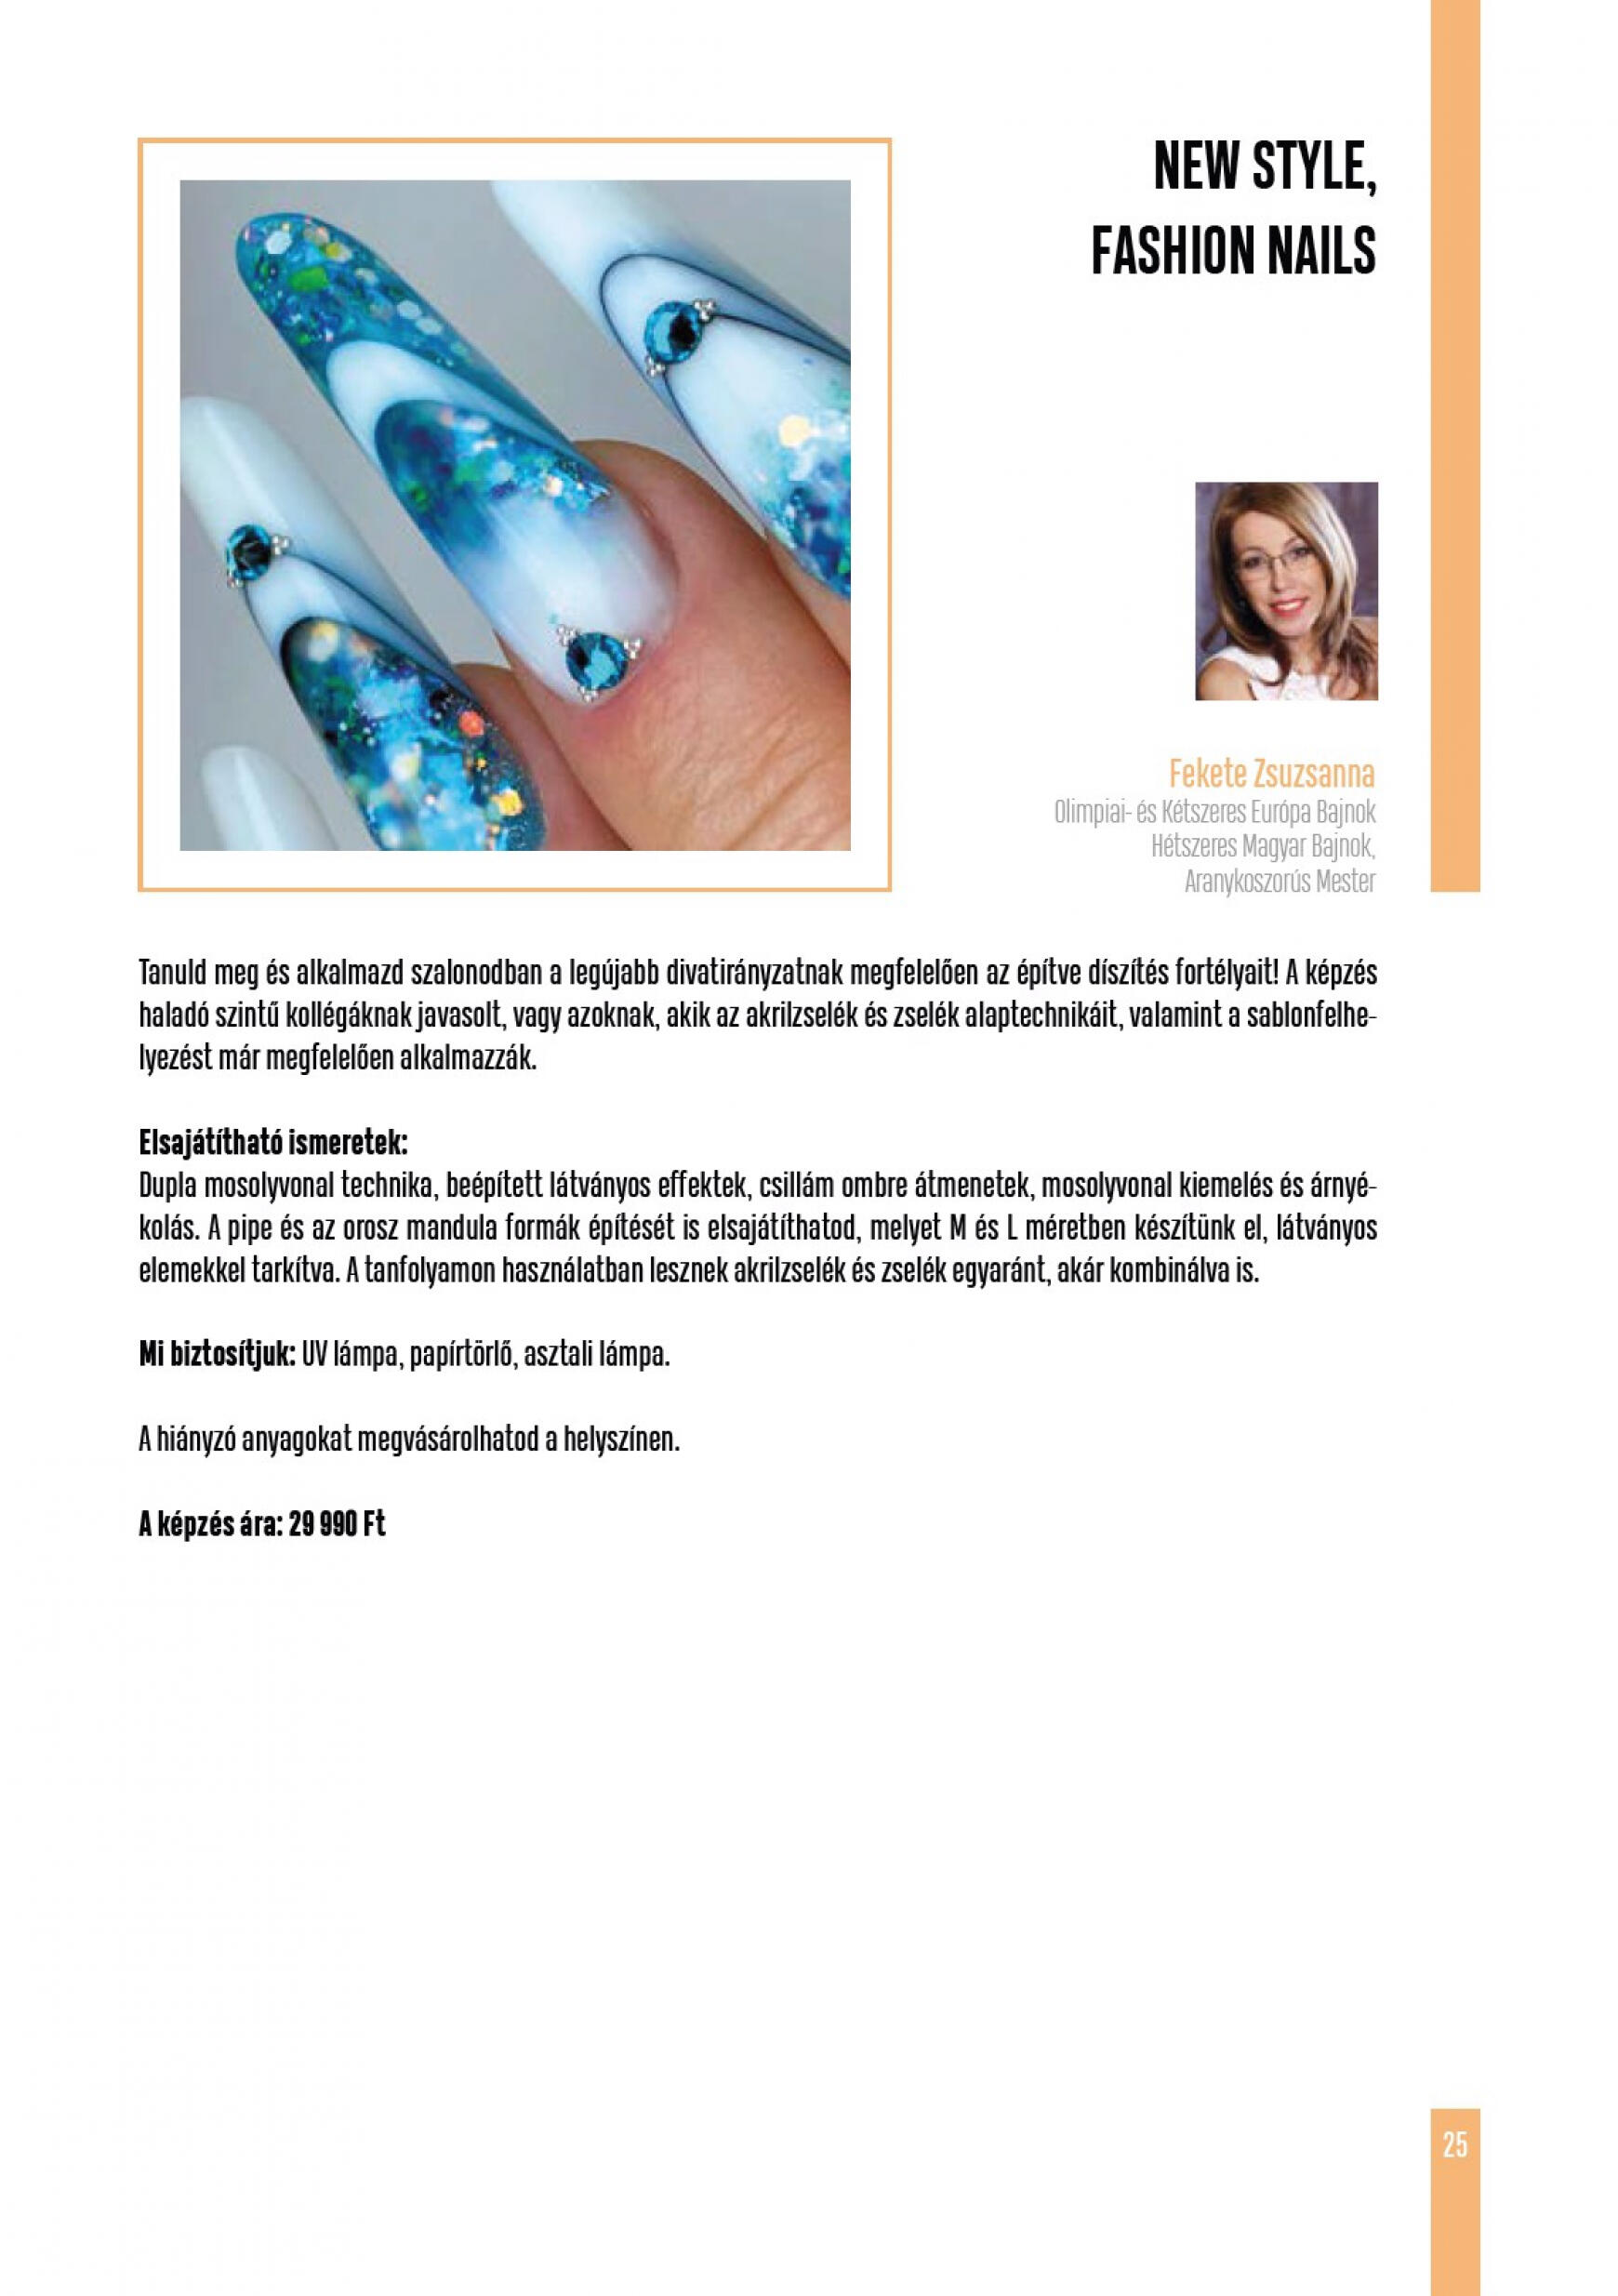 crystal-nails - Aktuális újság Crystal Nails - Tavasz/Nyár 05.01. - 08.31. - page: 25